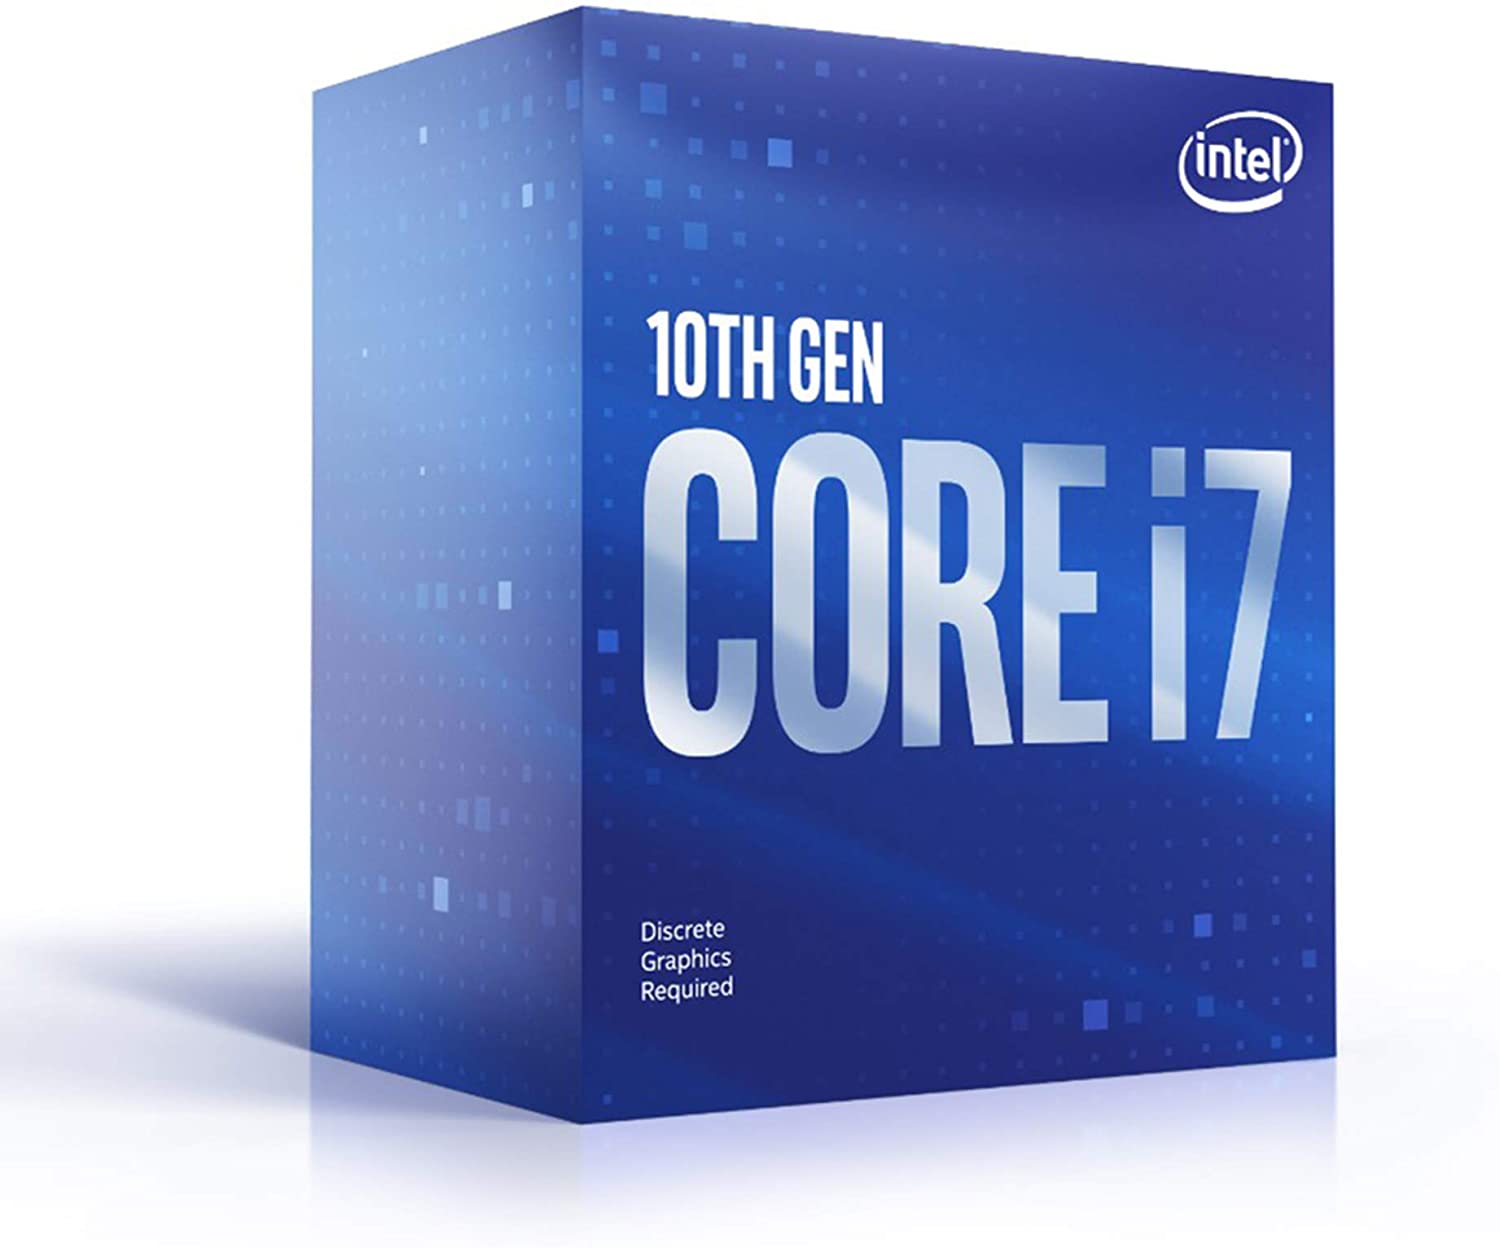 Procesador Intel Core i7 10700F, 10Th Gen, 4.8 Ghz, 8 Nucleos, Lga 1200, Nuevo, garantia 1  año